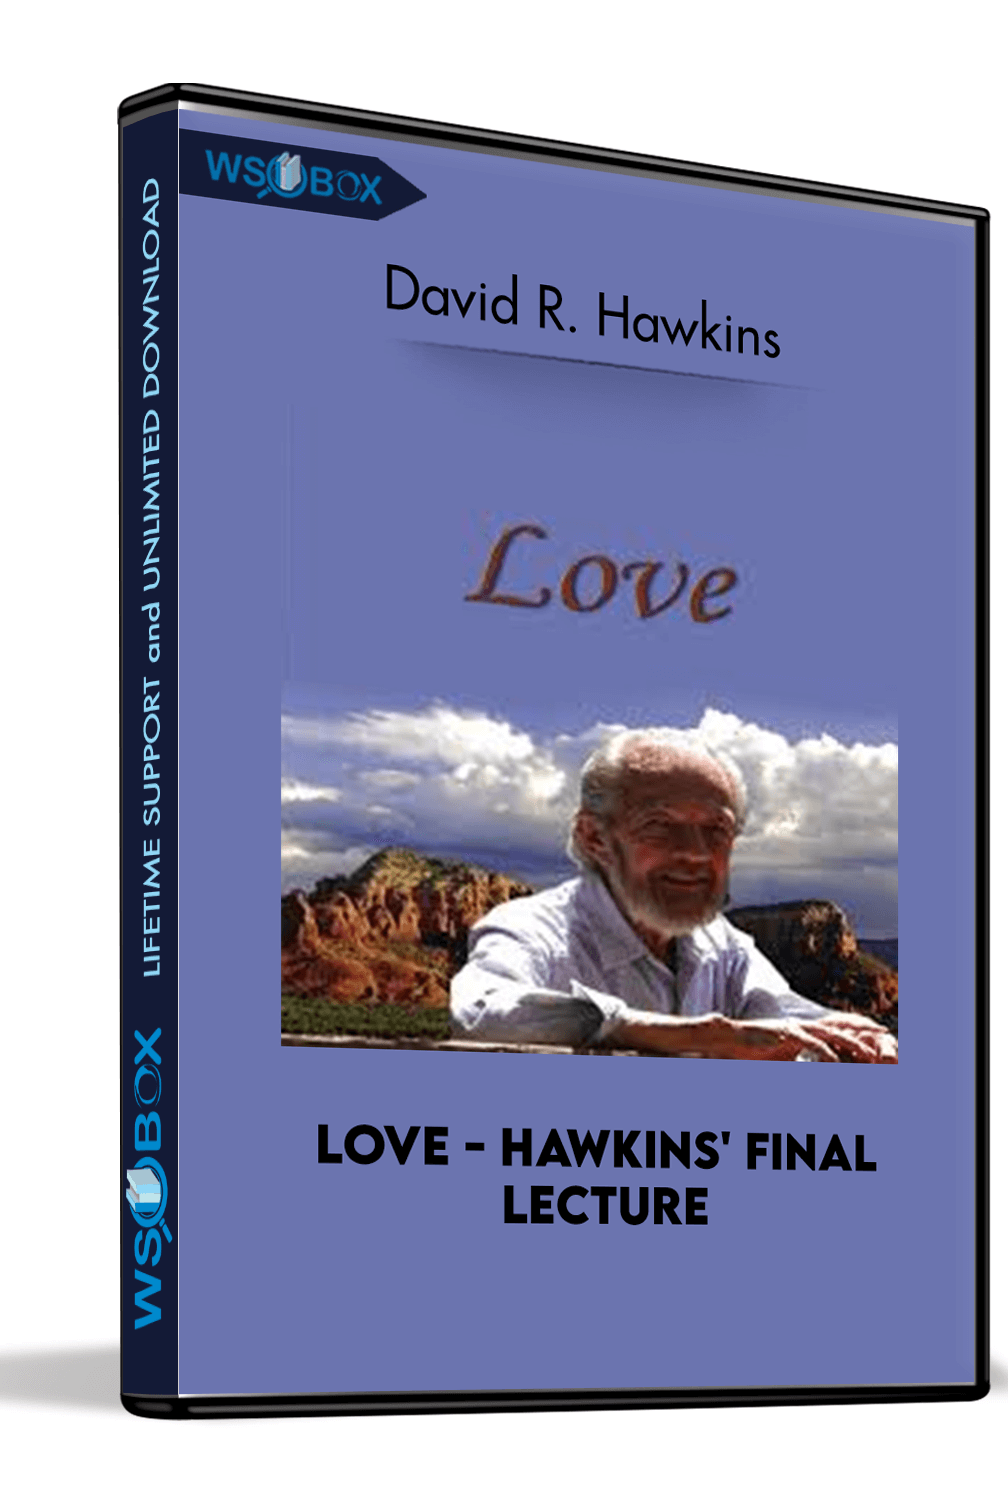 love-hawkins-final-lecture-david-r-hawkins